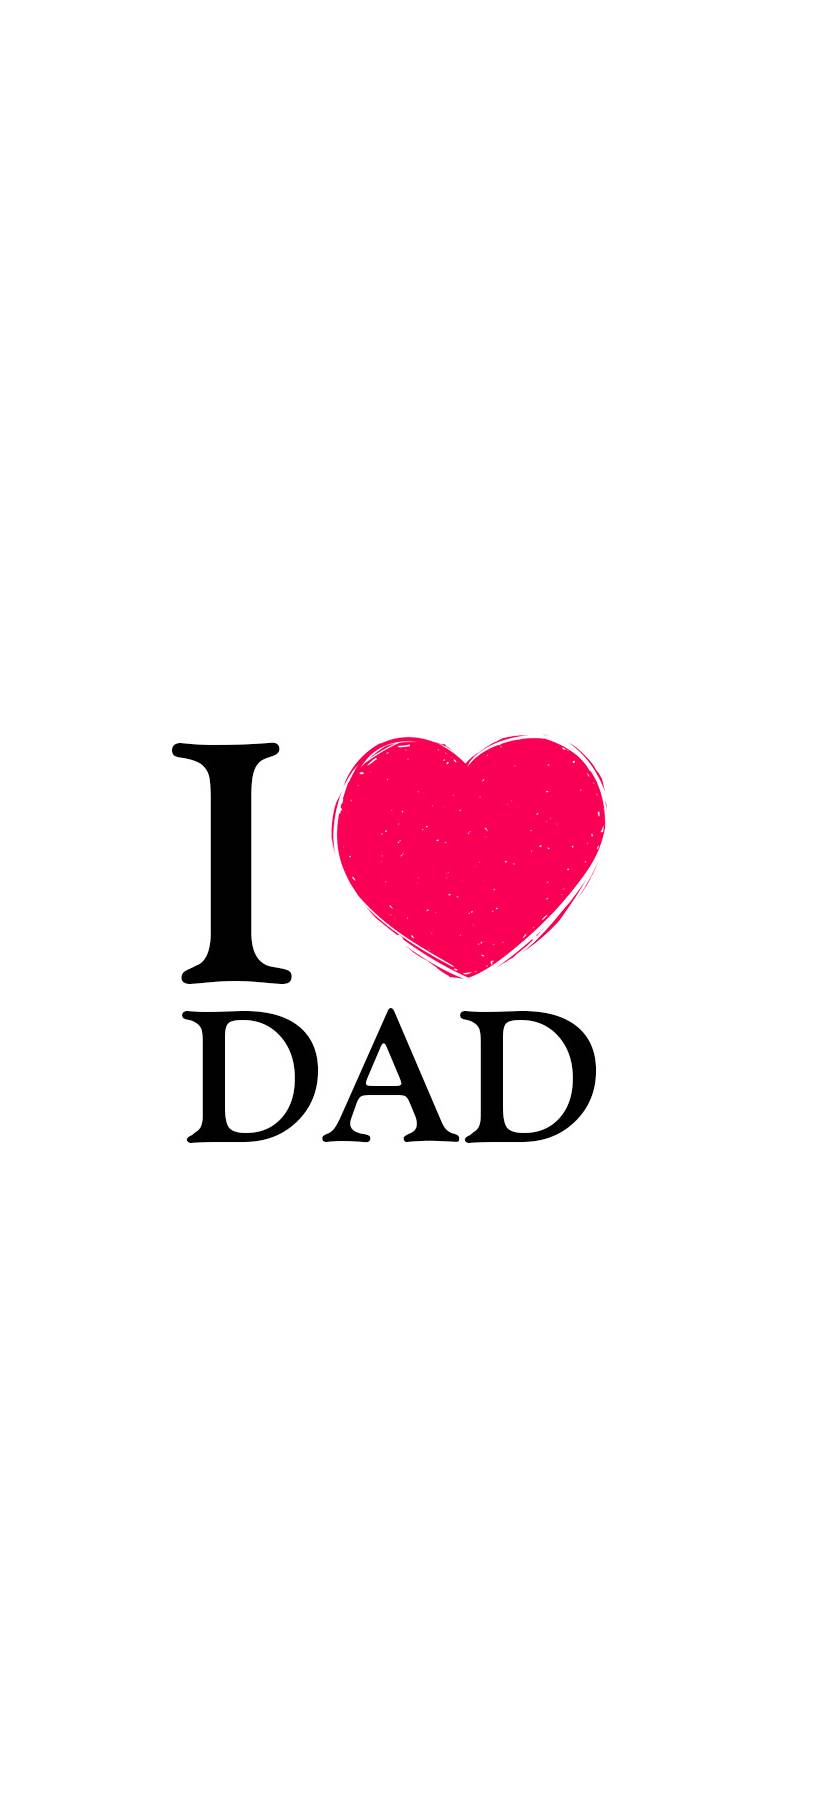 I Love You Dad Wallpaper - Fond D Écran Papa , HD Wallpaper & Backgrounds